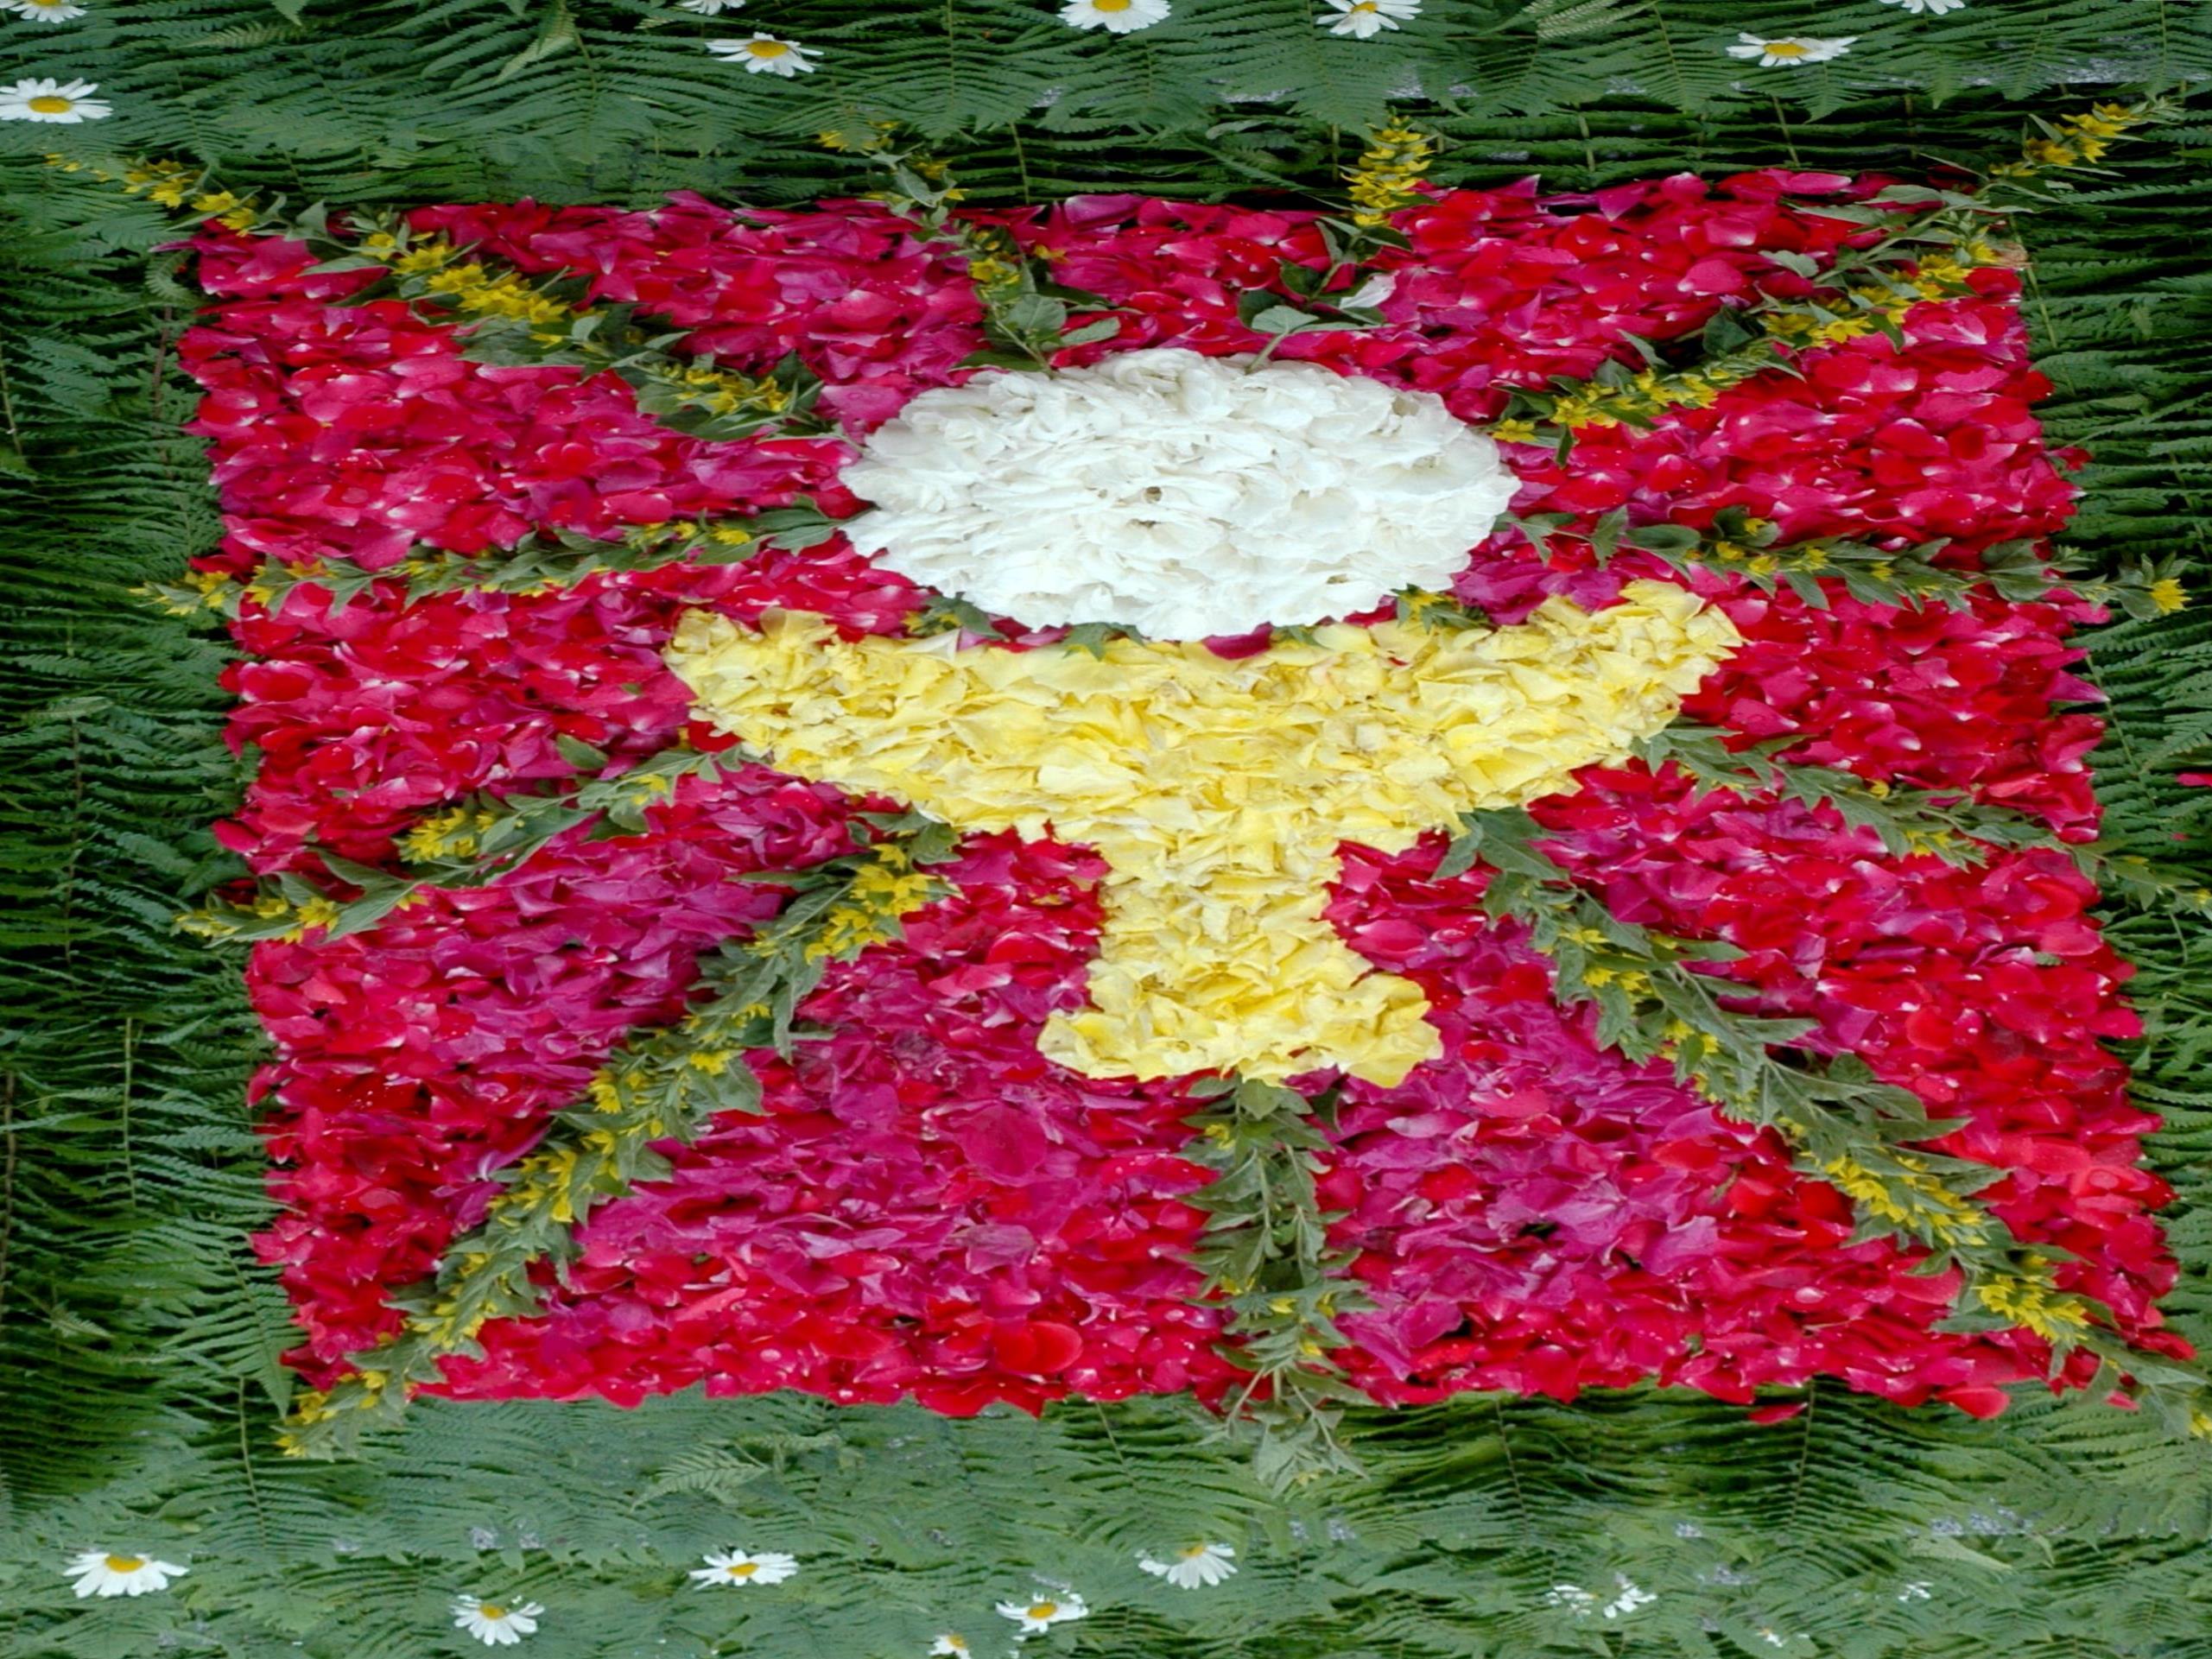 Der Blumenteppich vor der Hörbranzer Kirche (Ausschnitt)